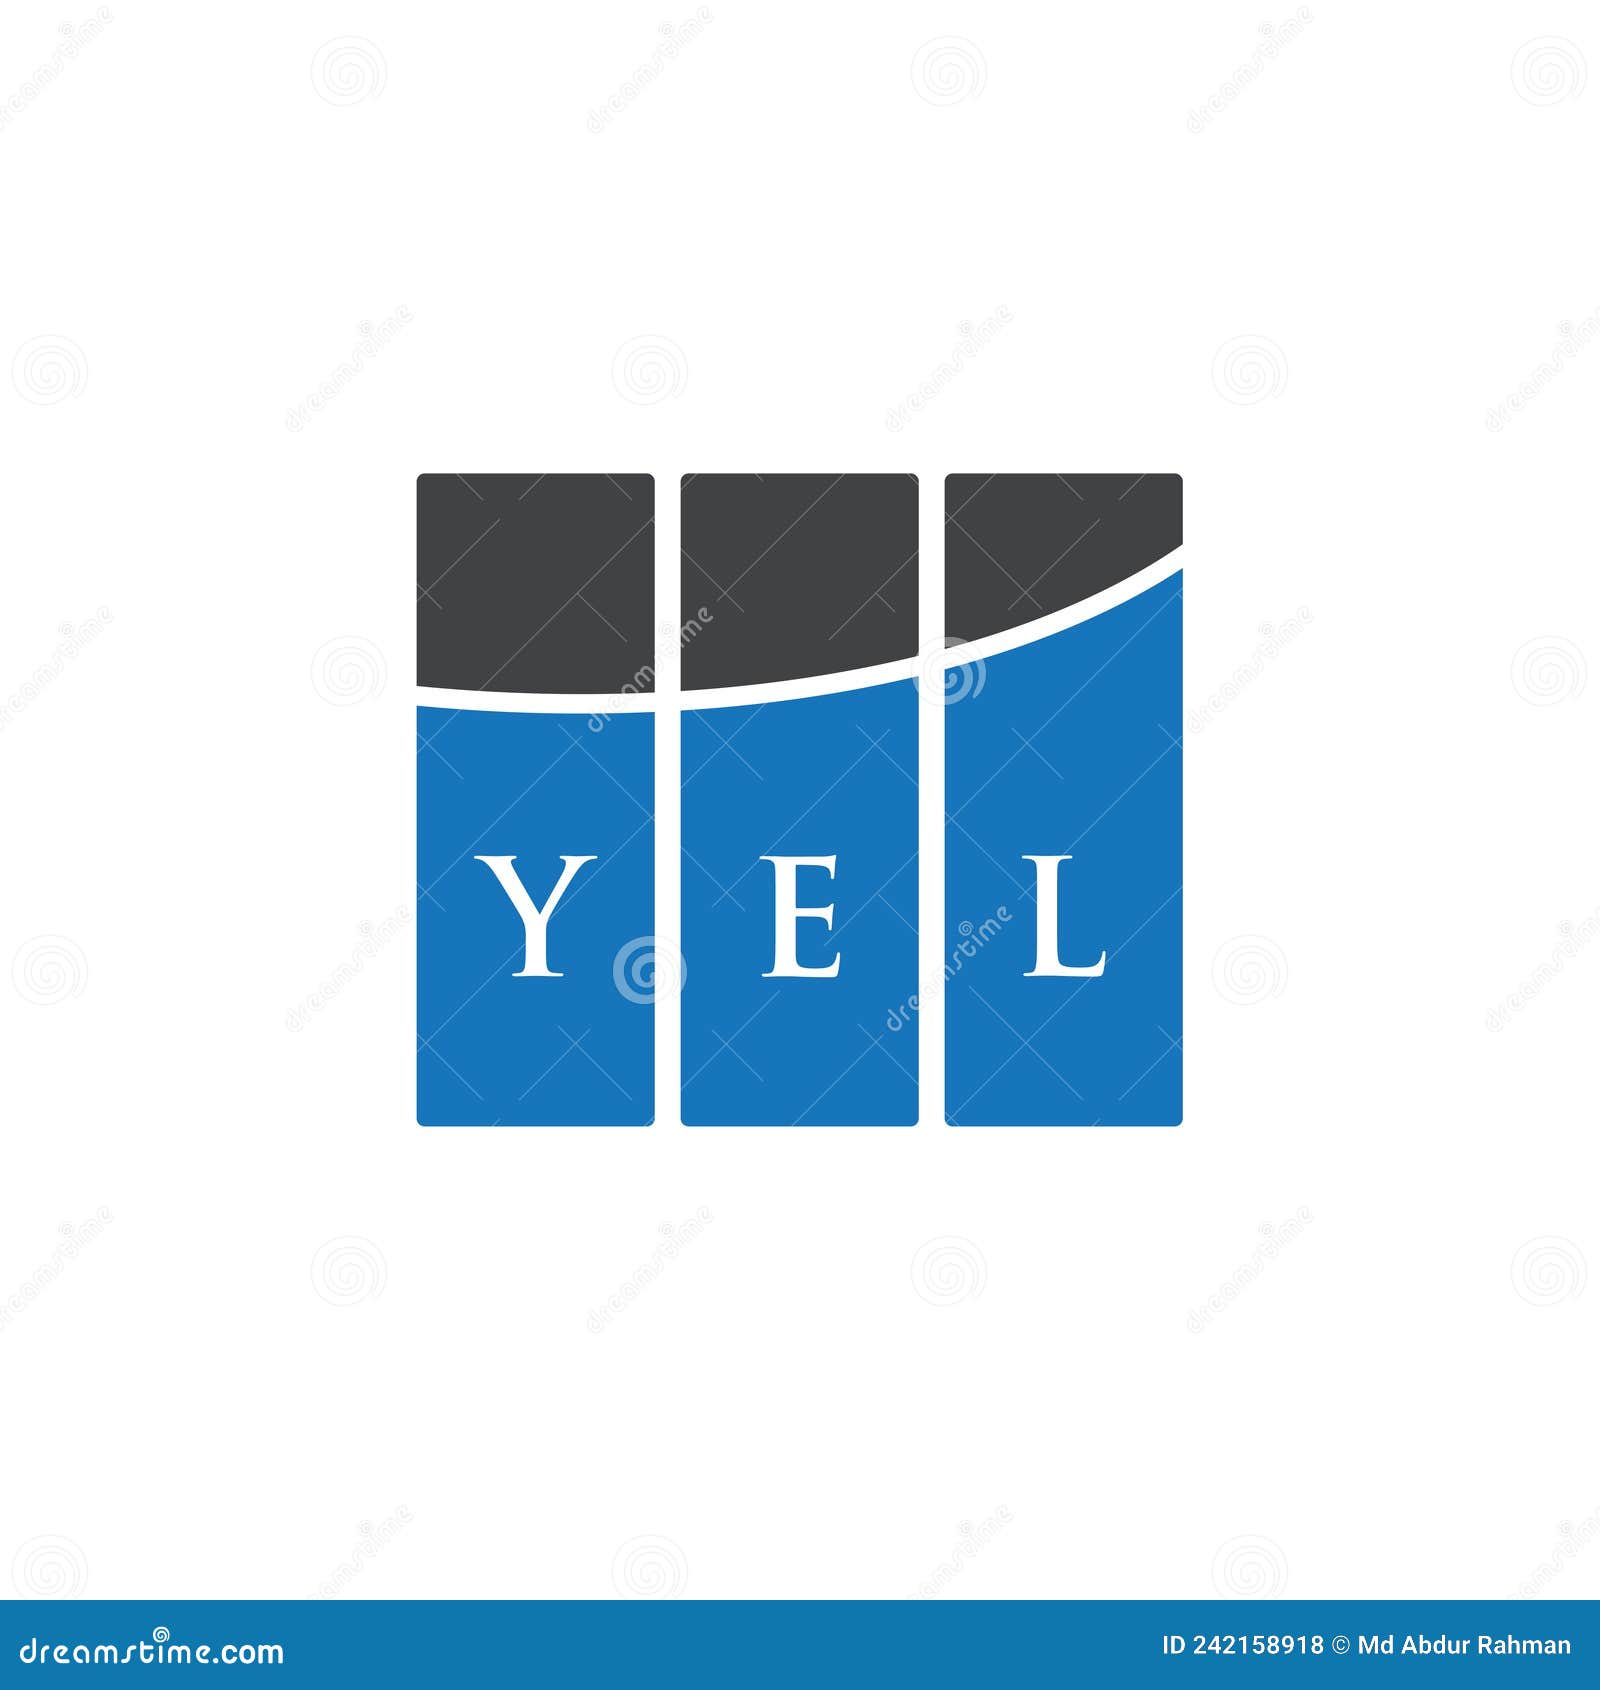 yel letter logo  on white background. yel creative initials letter logo concept. yel letter 